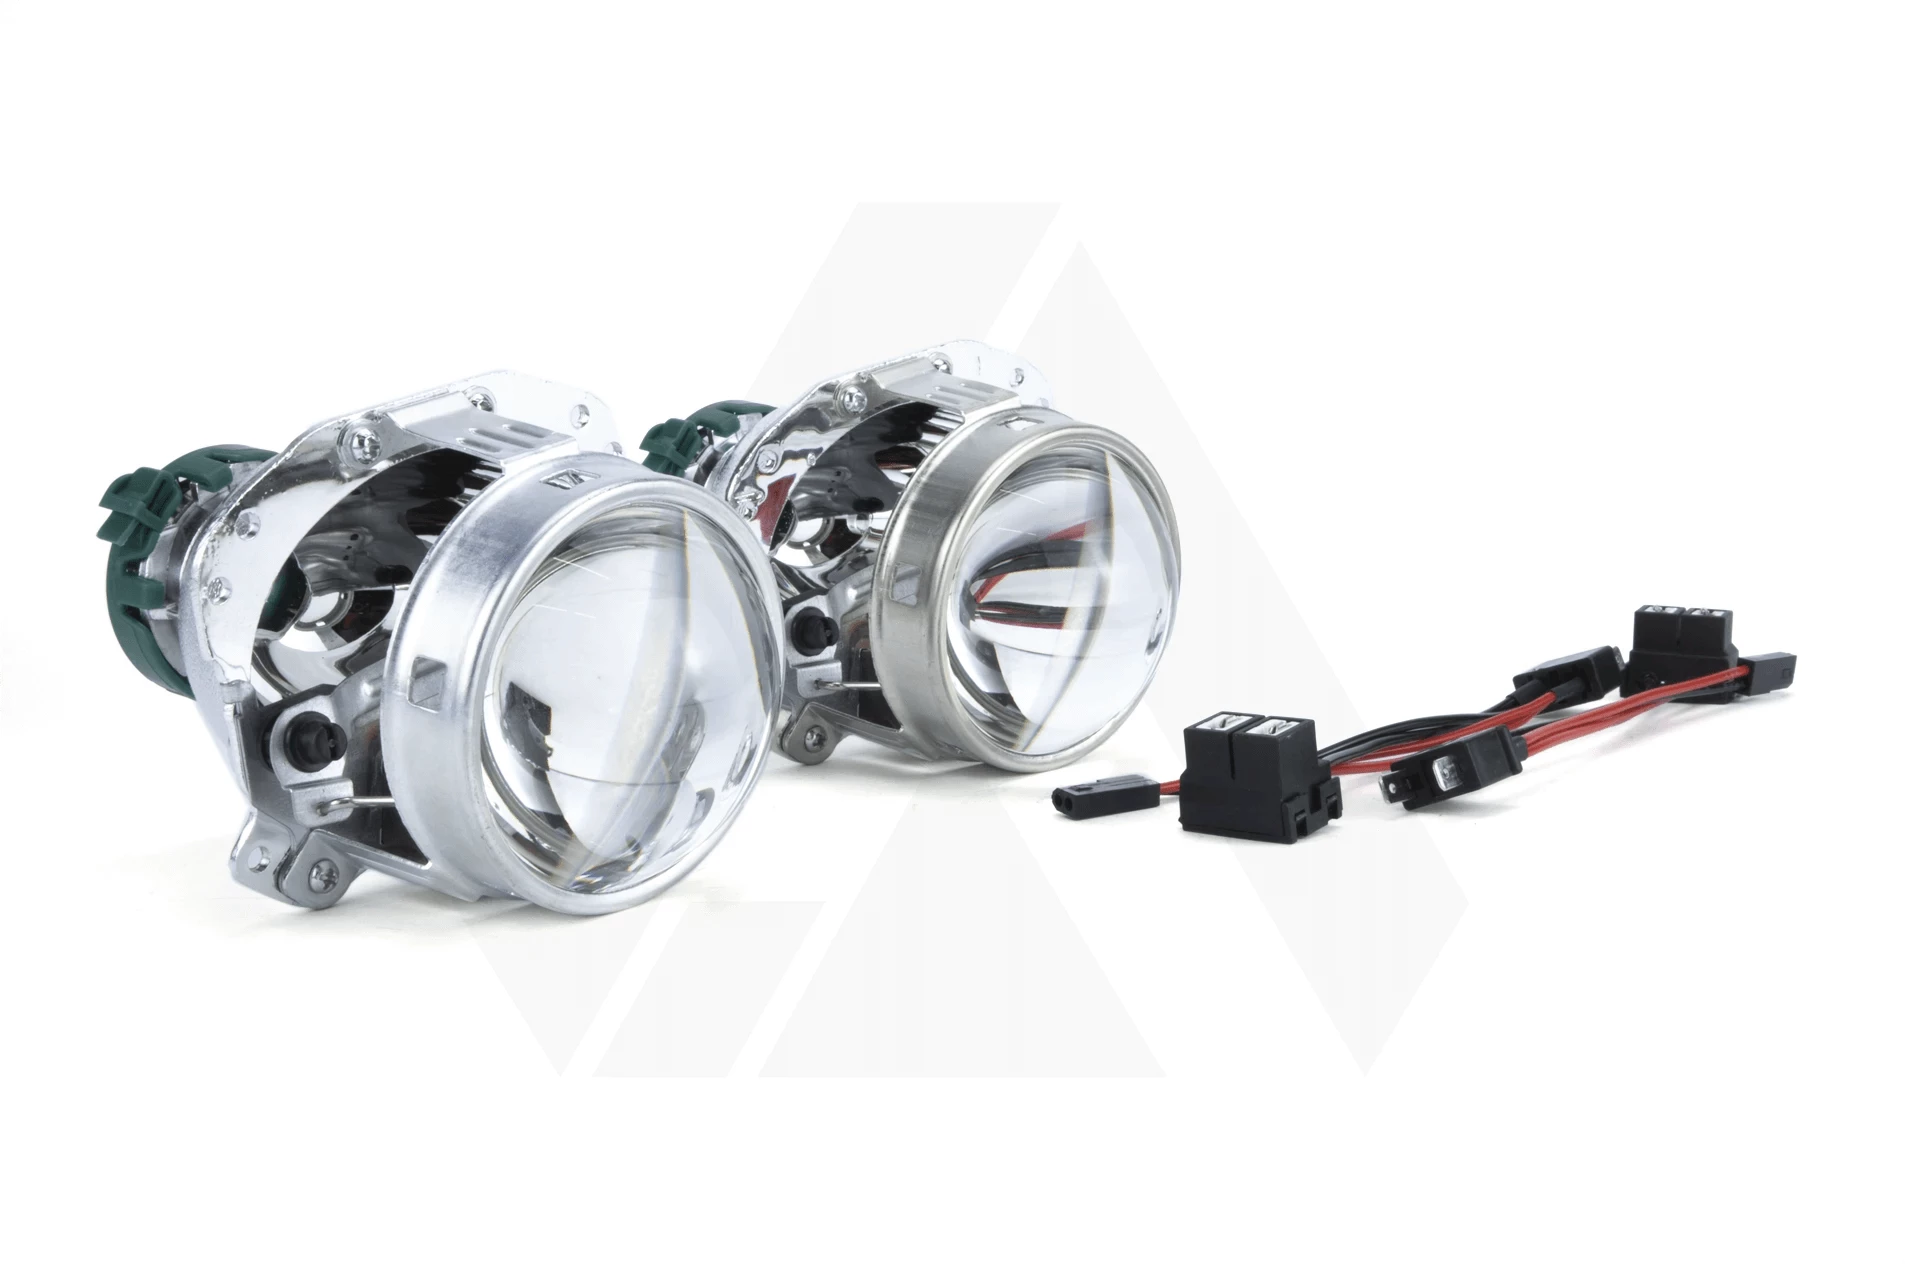 Hochleistungslampen-LED-Kit für die Scheinwerfer des BMW Serie 5 (E60 61) -  5 JAHRE GARANTIE und Lieferung versandkostenfrei!